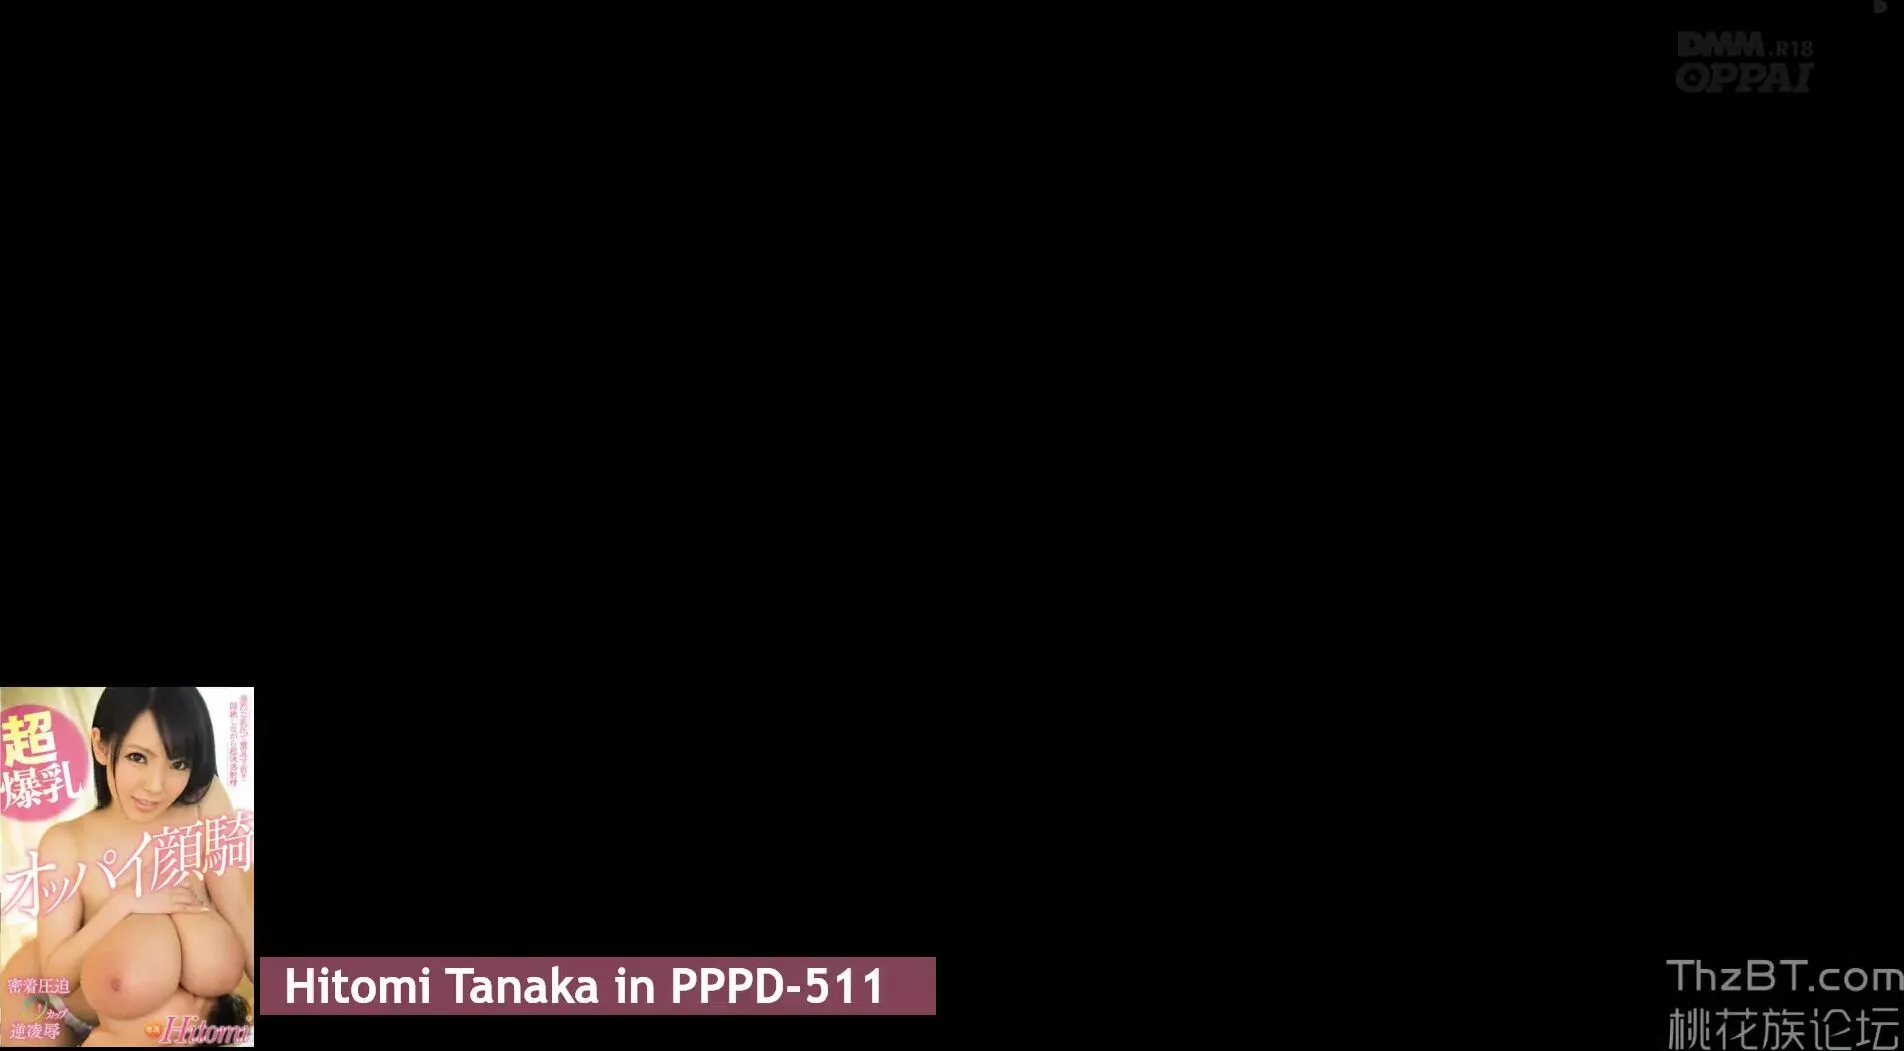 Hitomi tanaka pppd-511